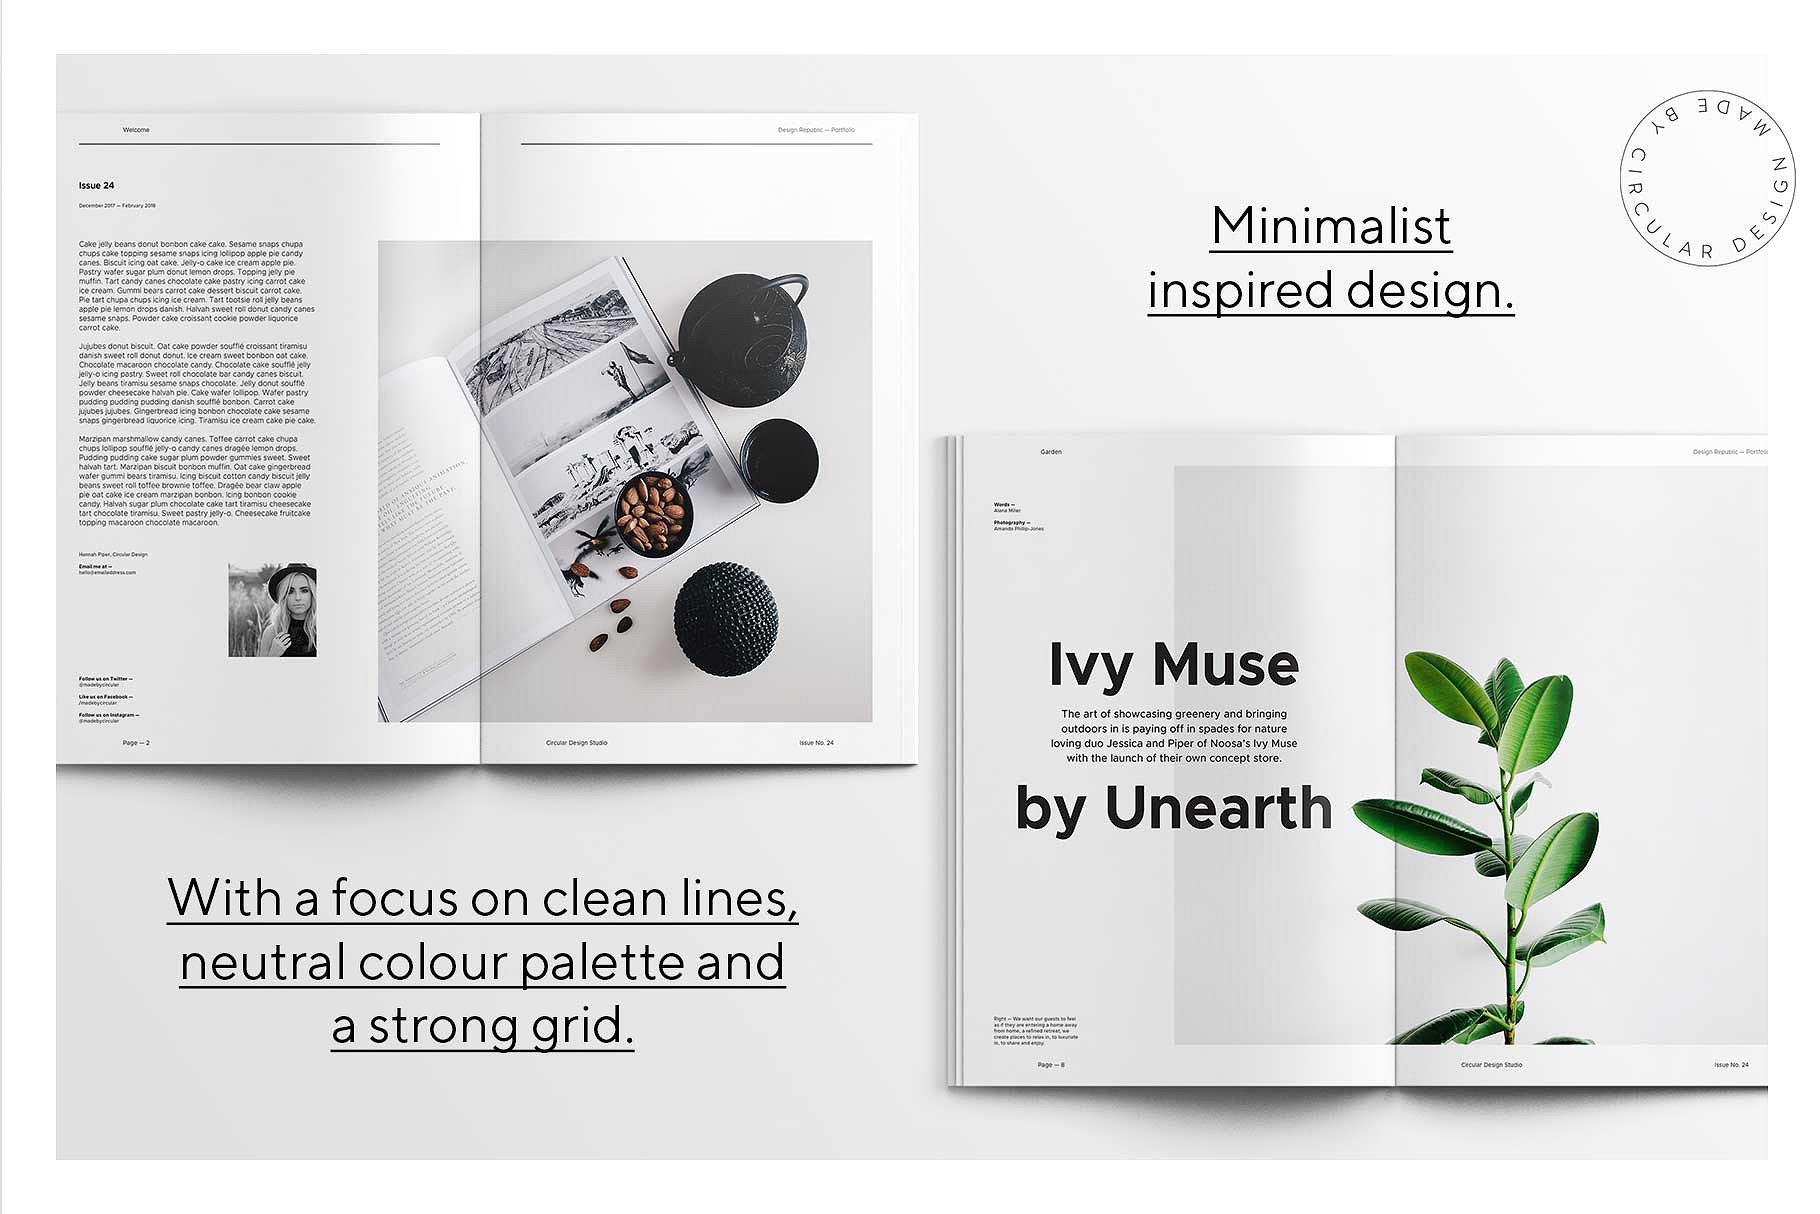 第一素材下午茶：时尚简约风格的画册手册宣传册楼书InDesign设计模板插图(2)